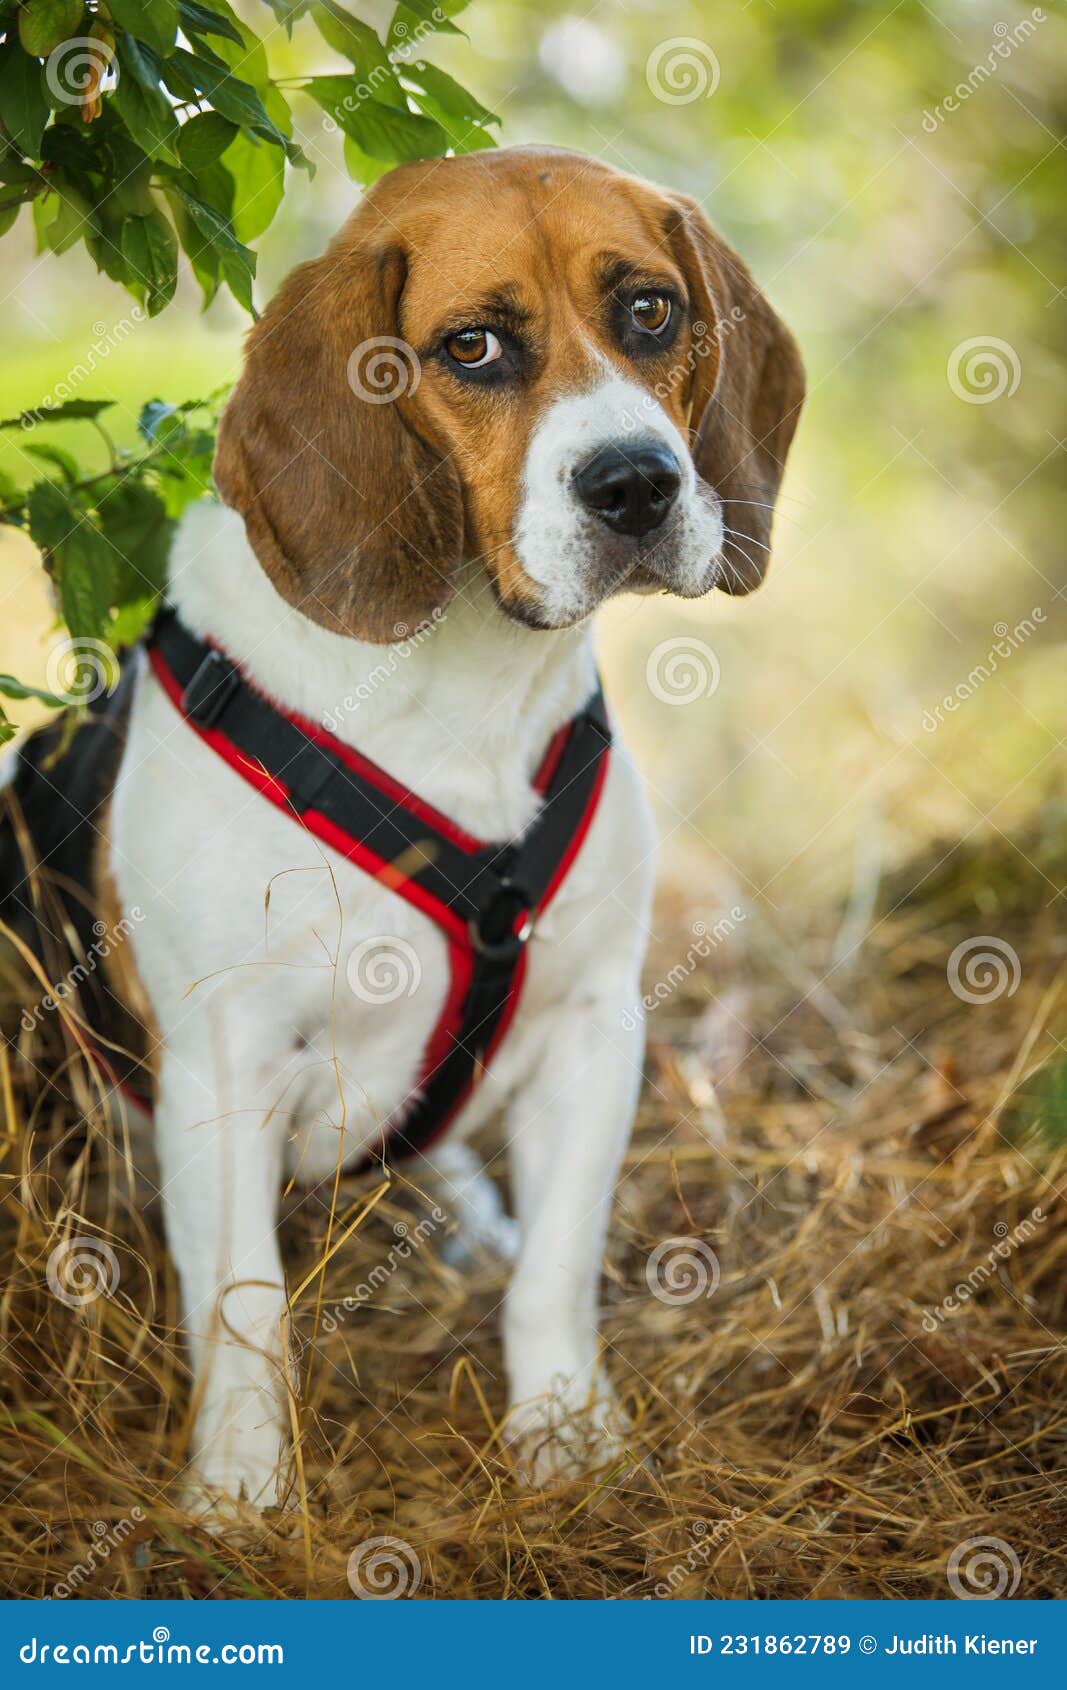 Besætte Biskop anspændt Beagle Dog Sitting in Nature Background Stock Image - Image of beagle,  mammal: 231862789